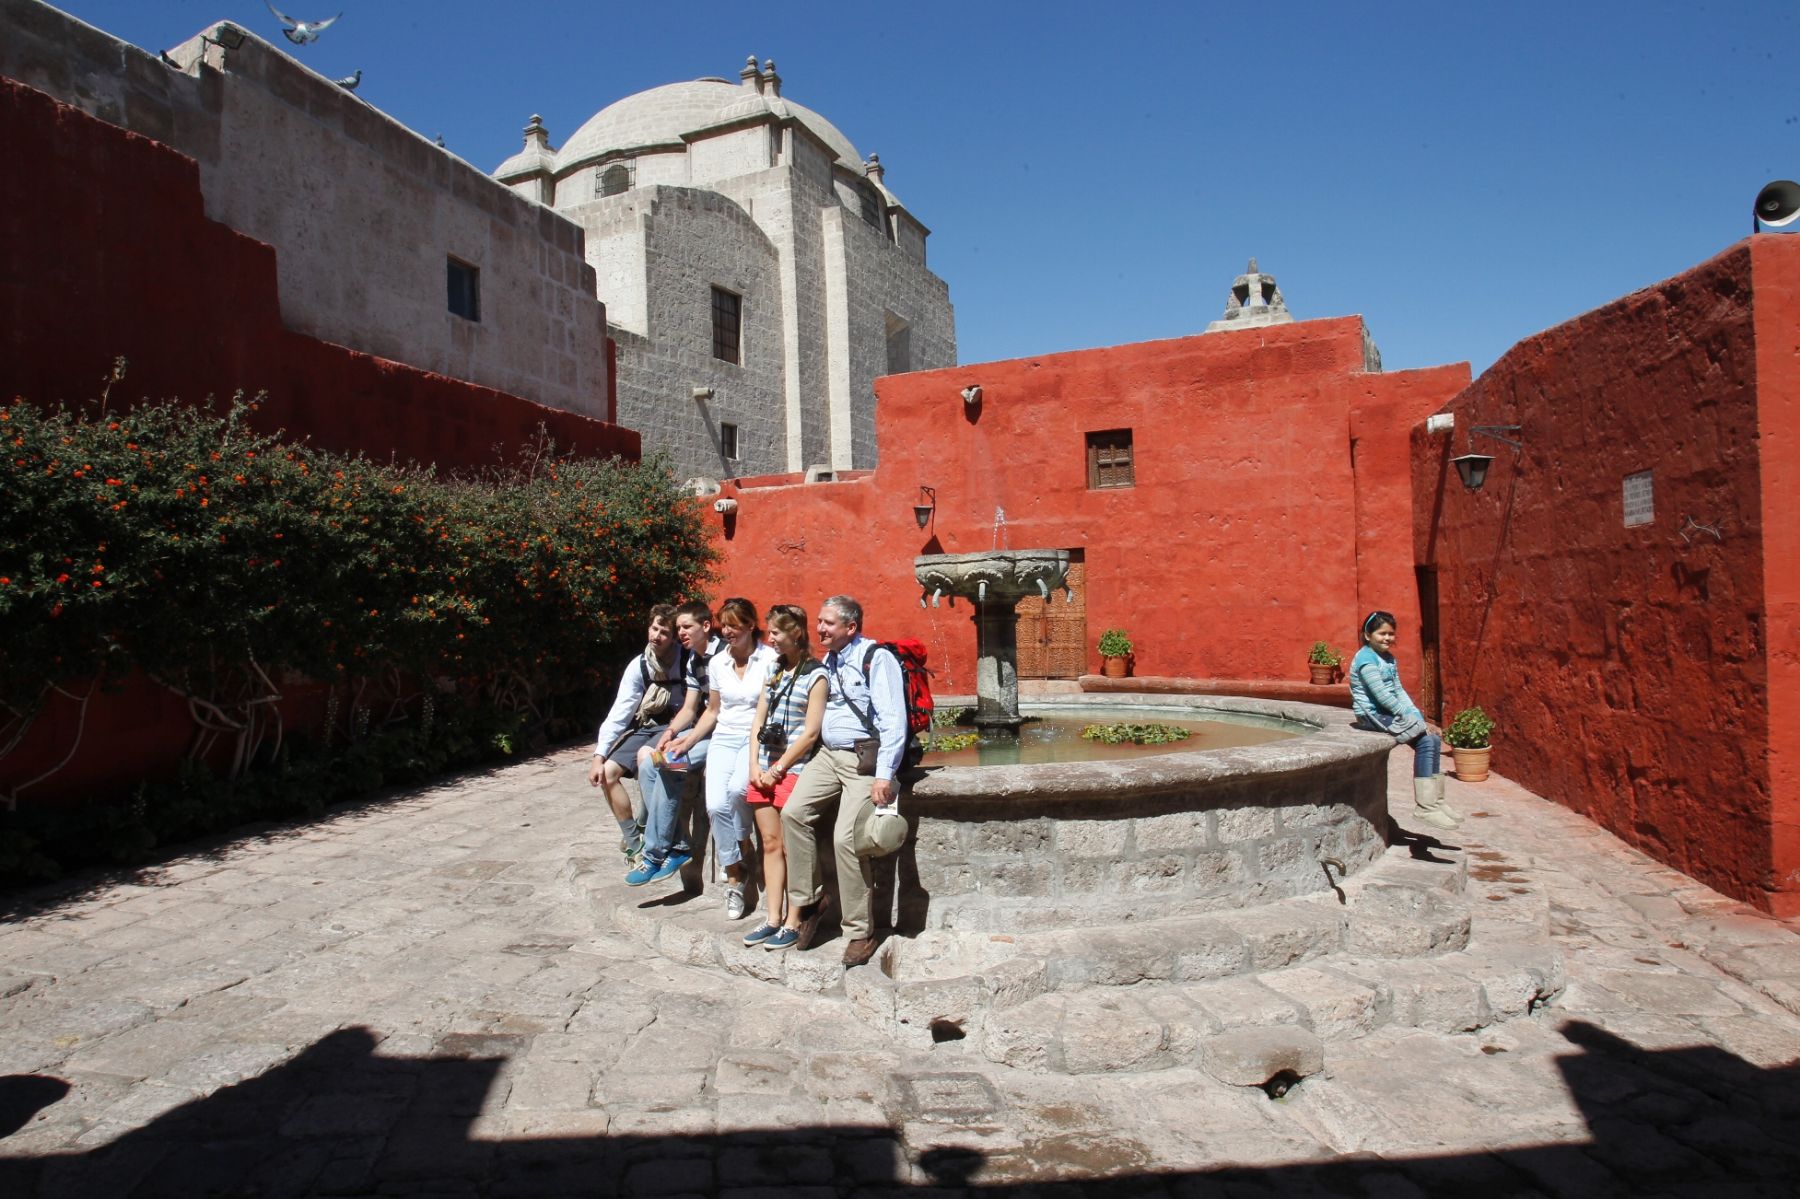 La ciudad de Arequipa, donde destaca el monasterio de Santa Catalina, es una de las ciudades de indispensable visita en Perú este año según prestigiosas publicaciones de alcance mundial.  ANDINA/archivo